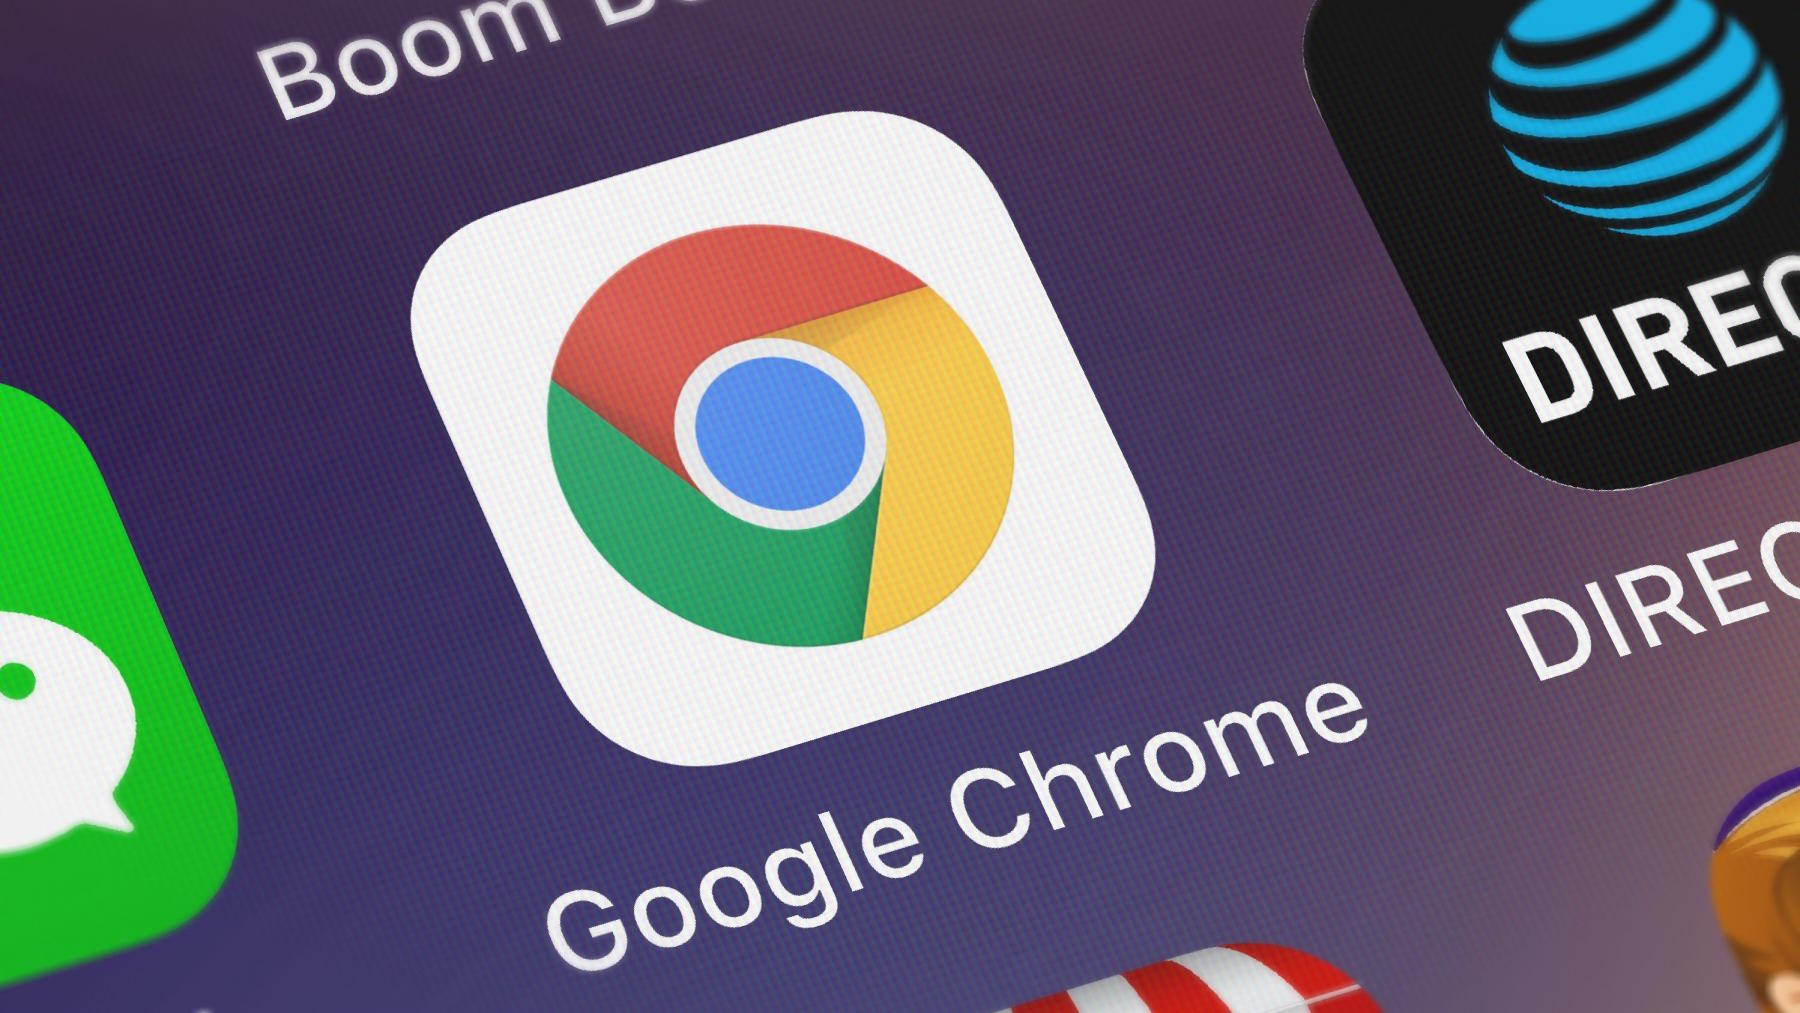 Chrome будет показывать разработчикам, как их сайты выглядят для пользователей с нарушениями зрения - 1